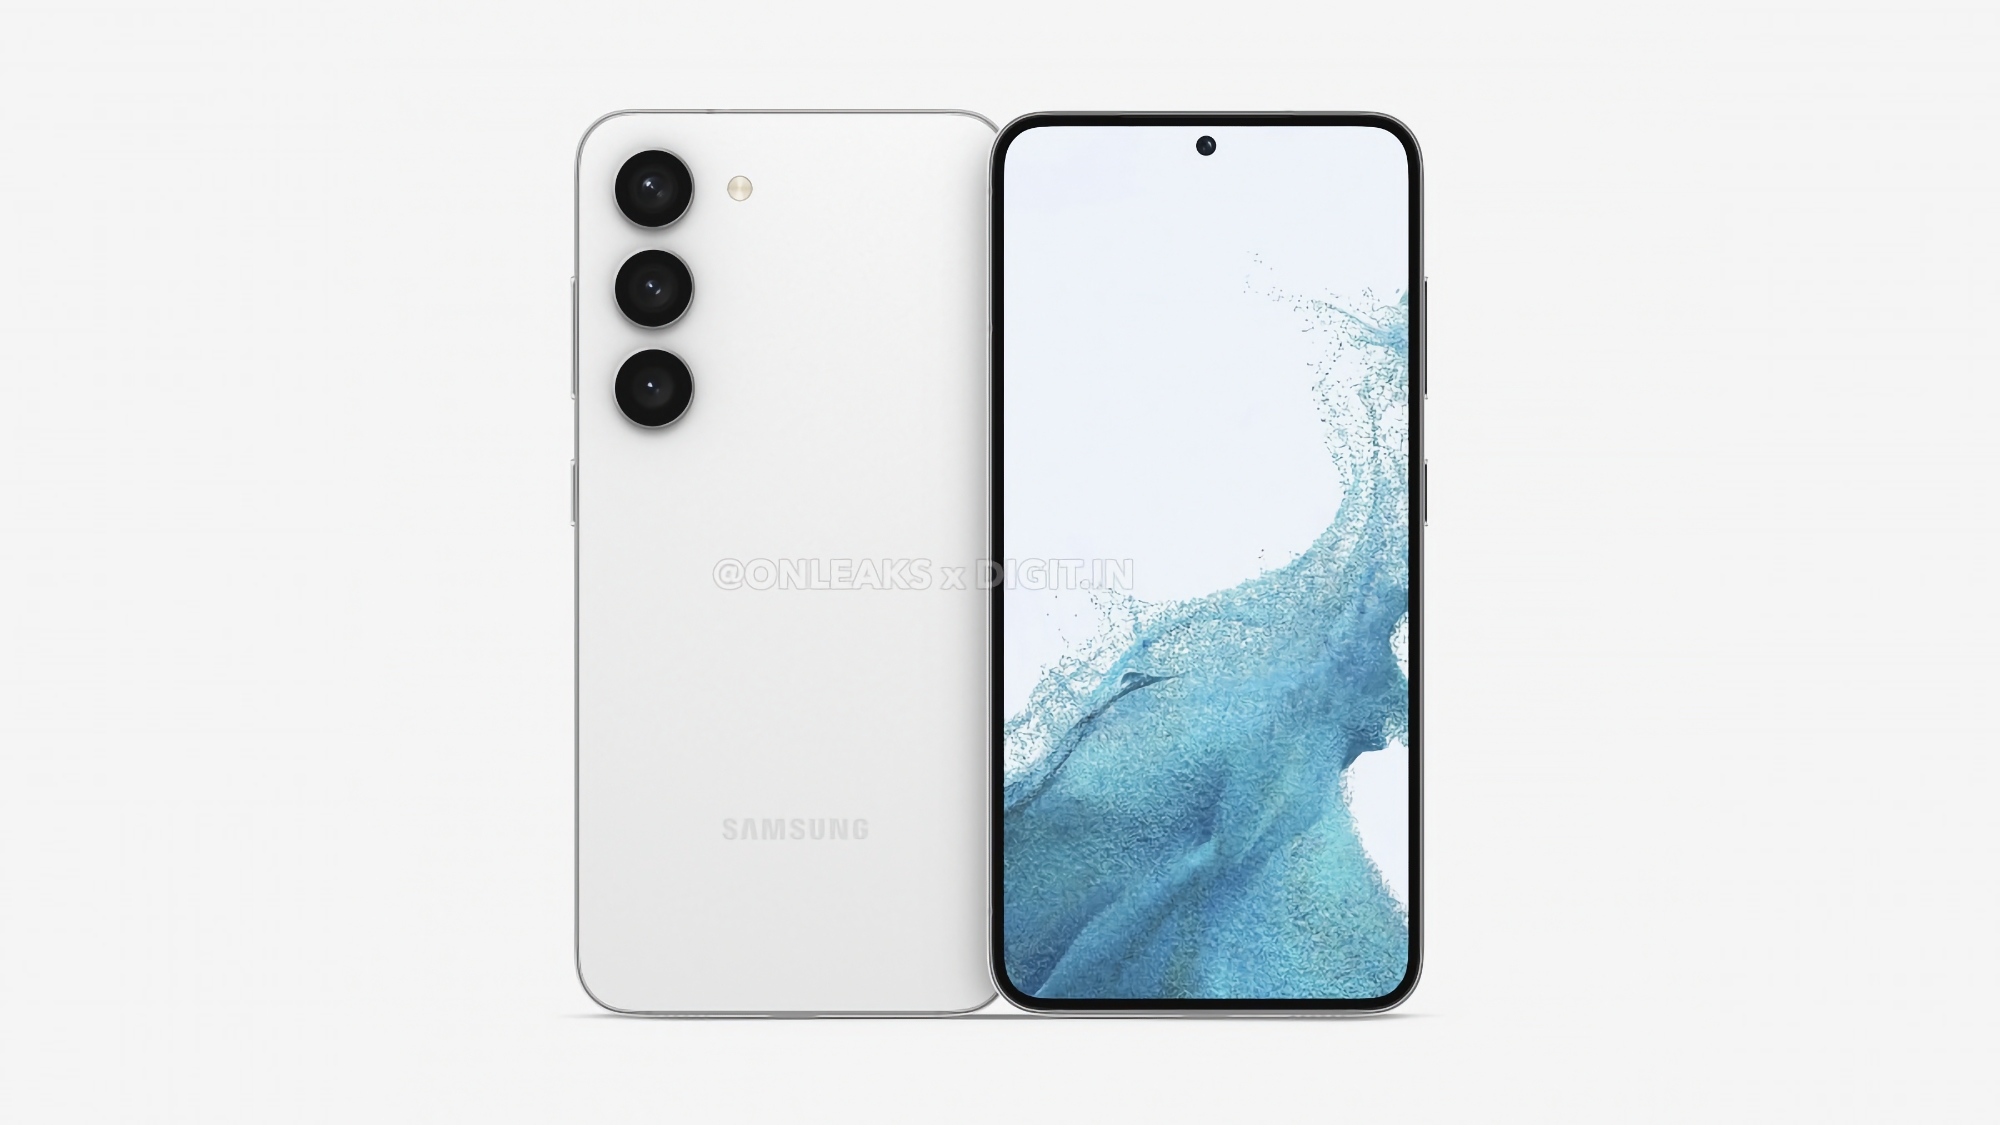 Écran AMOLED à 120 Hz, version overclockée de la puce Snapdragon 8 Gen 2 et un triple appareil photo de 50 MP : Insider a révélé les spécifications détaillées du Samsung Galaxy S23+.